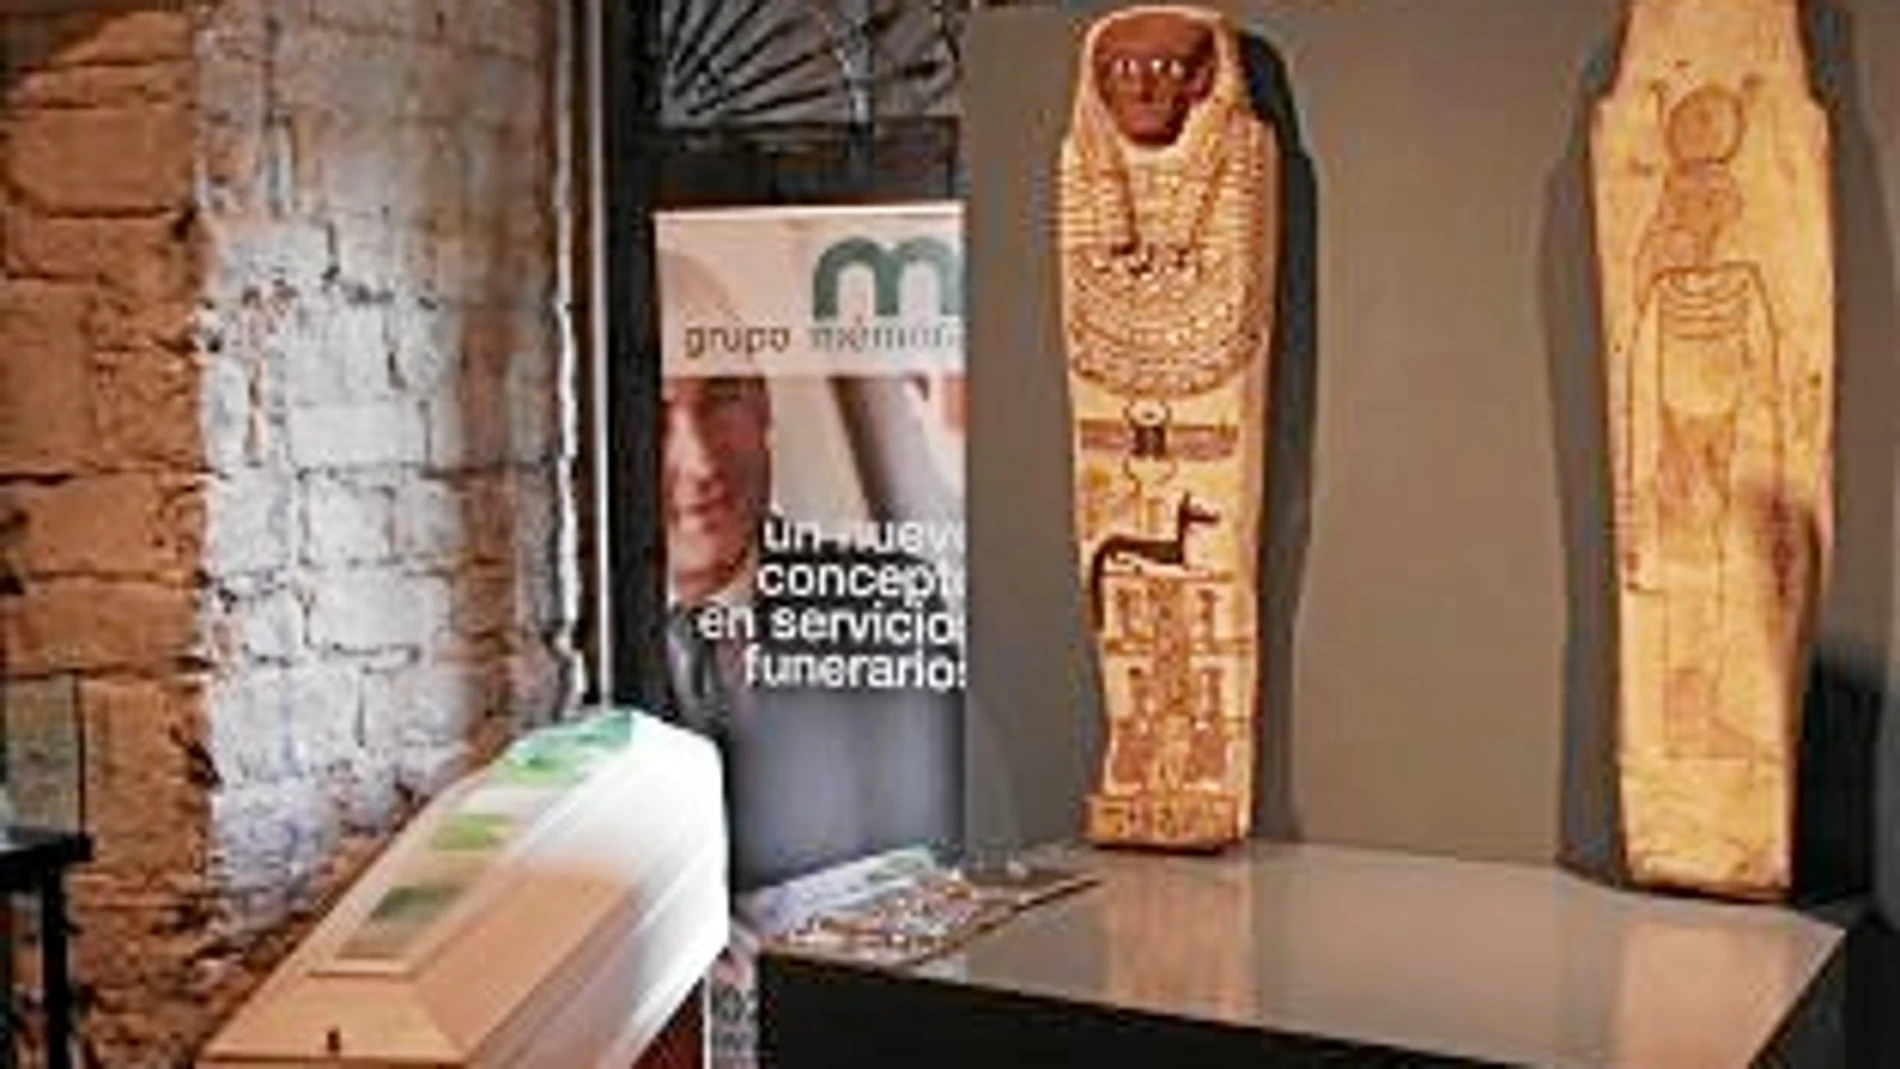 Una máscara y sarcófagos egipcios forman parte del contenido de la exposición en el Museo Diocesano de Barcelona